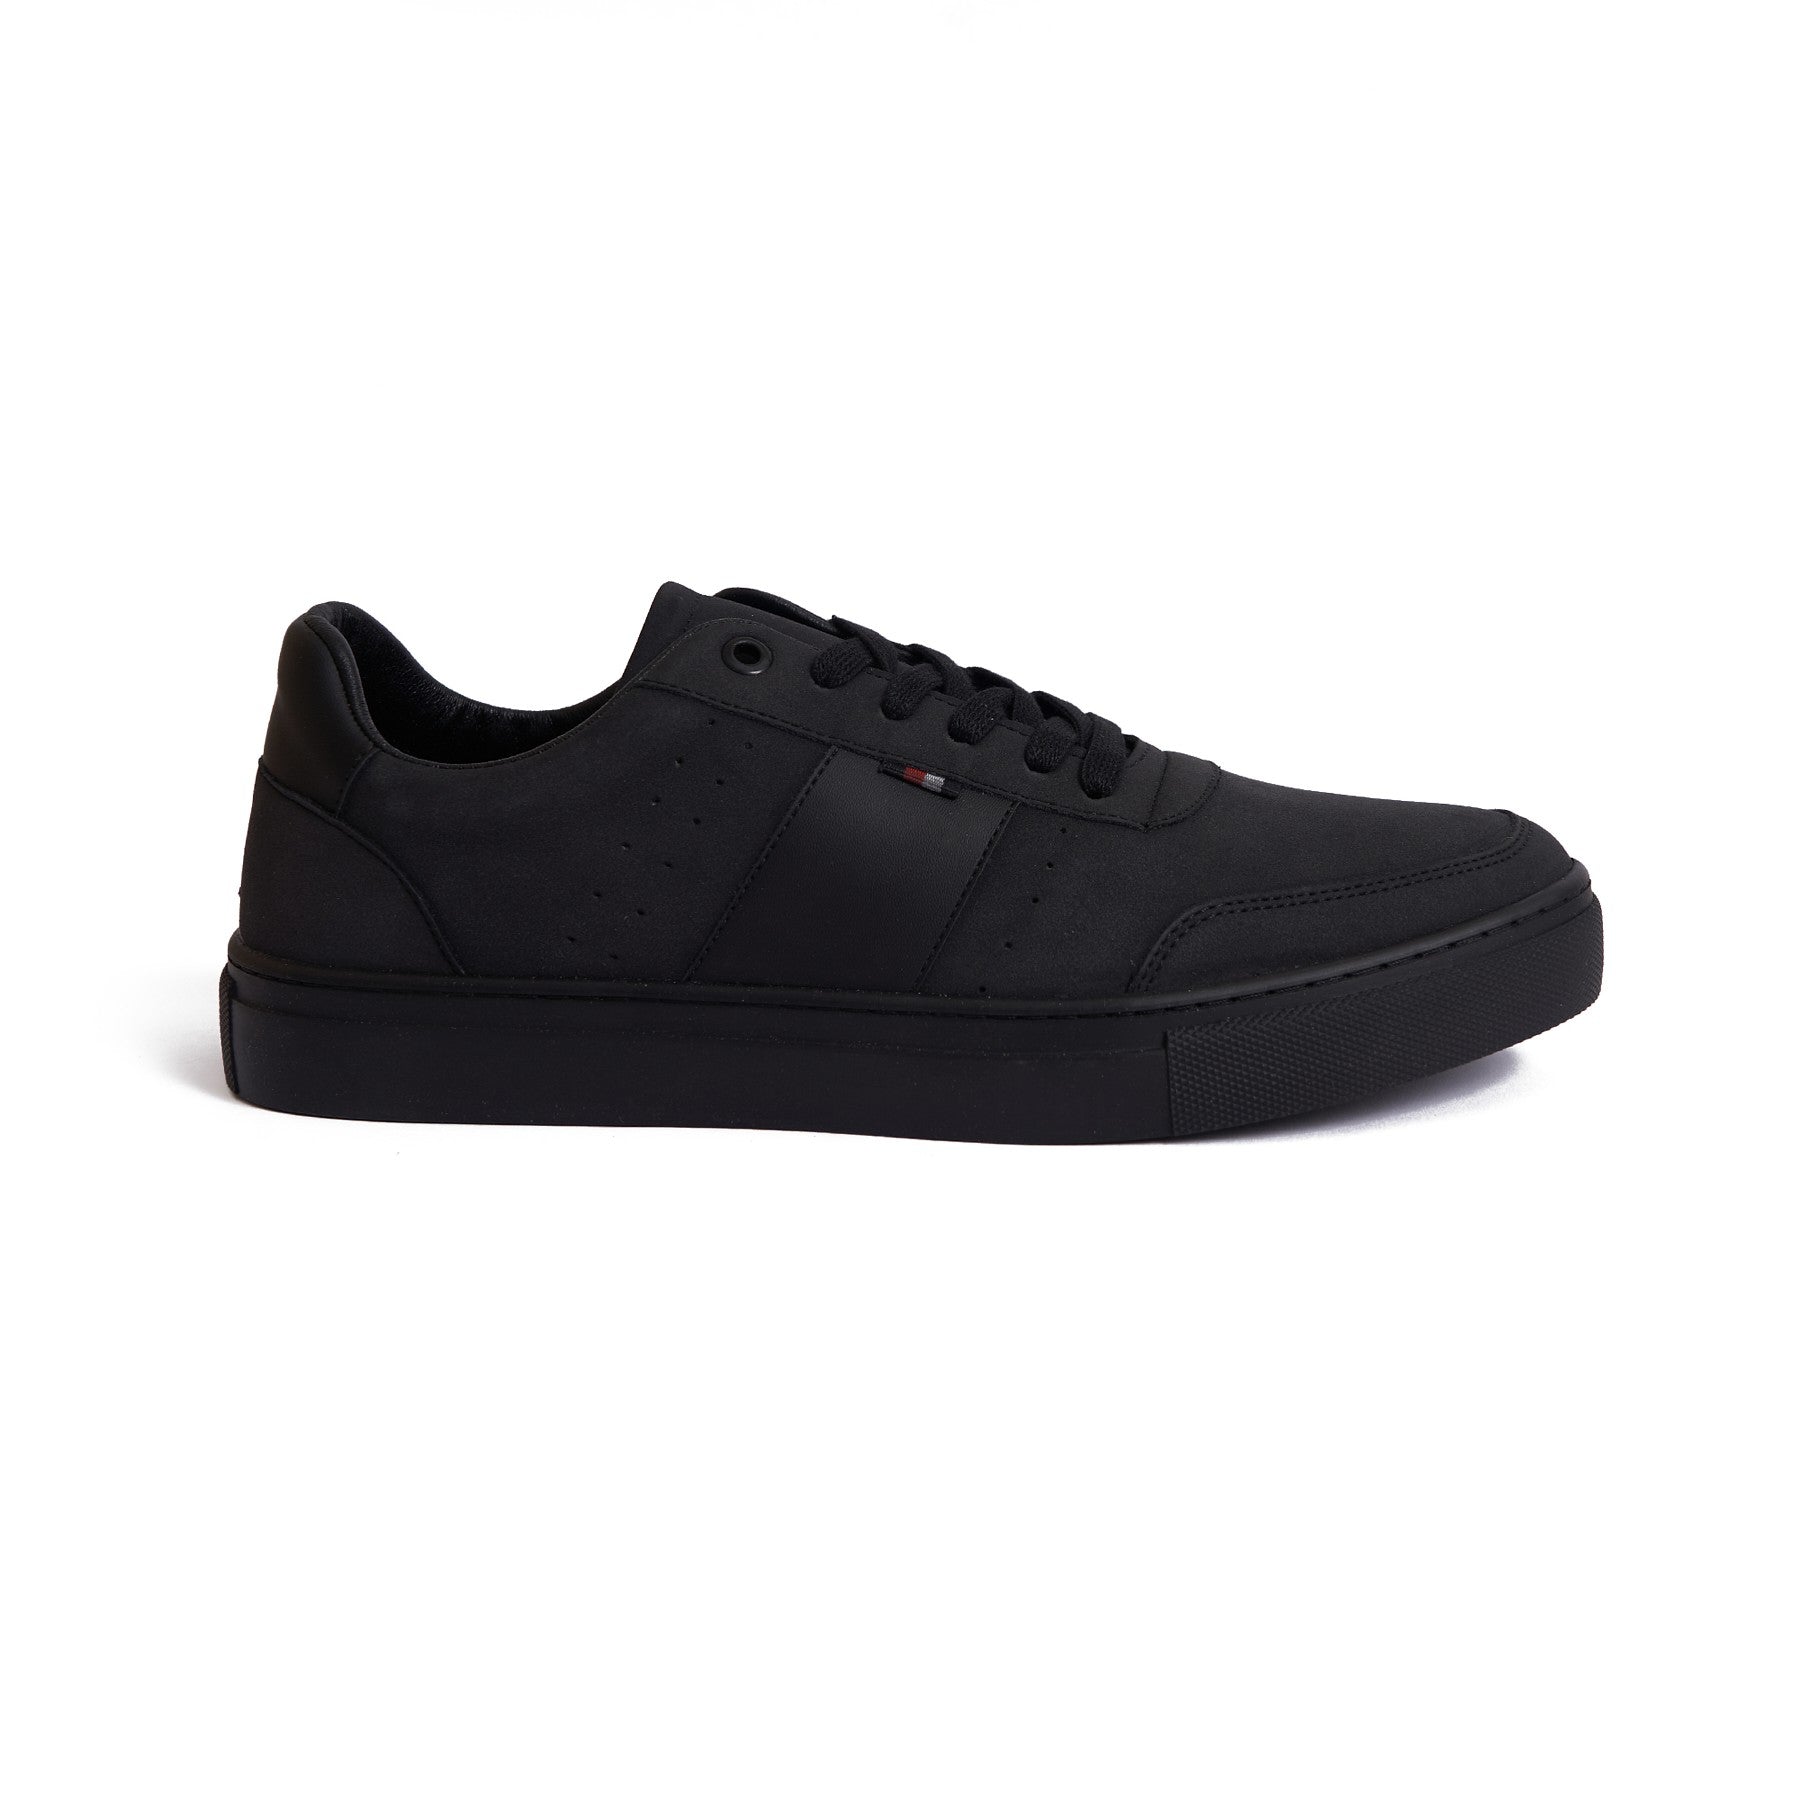 V762 Black Sneaker - Modern Men's Fashion Footwear -2